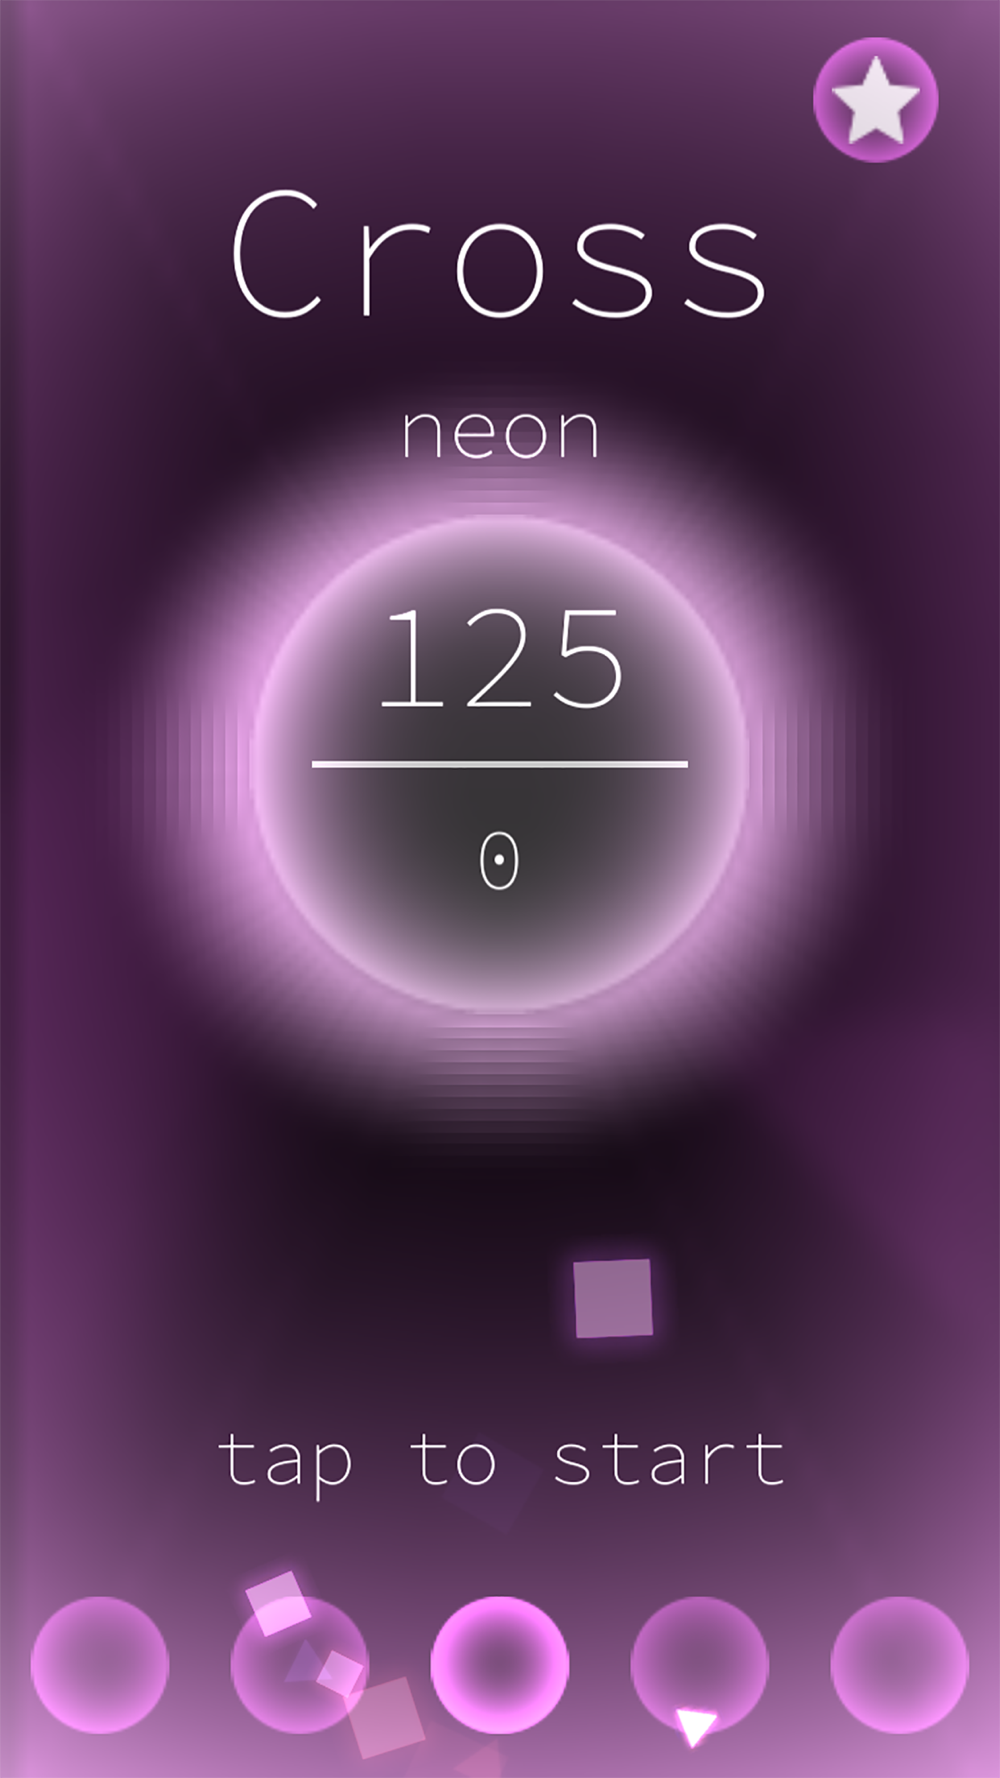 反射神経トレーニング 動体視力 集中力アップゲーム Free Download App For Iphone Steprimo Com